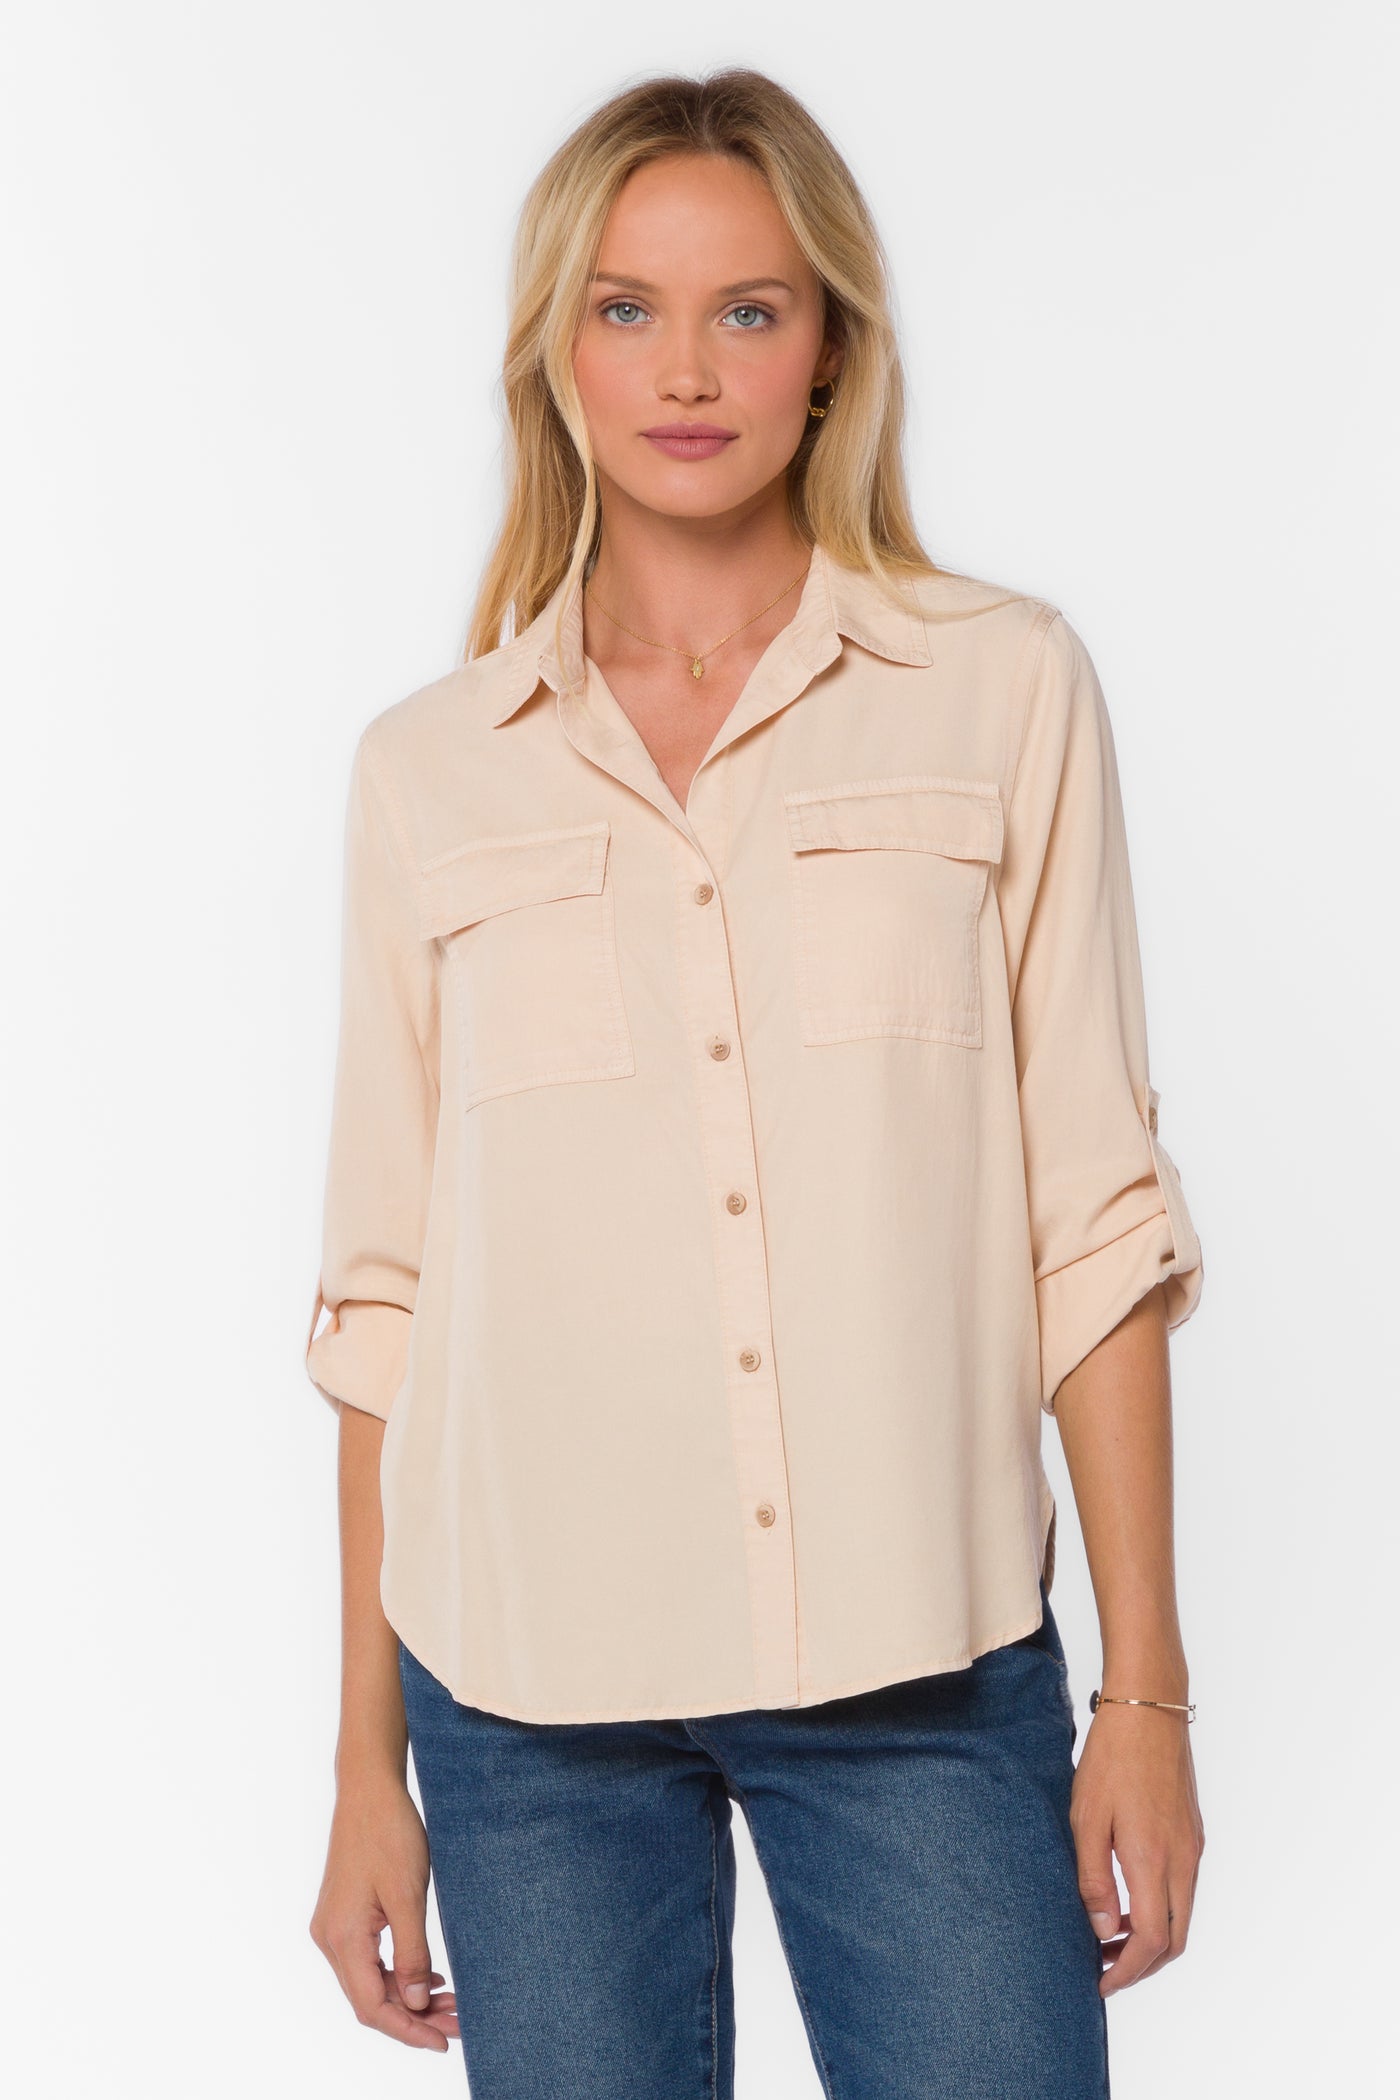 Flax engelhart shirt womens - Gem